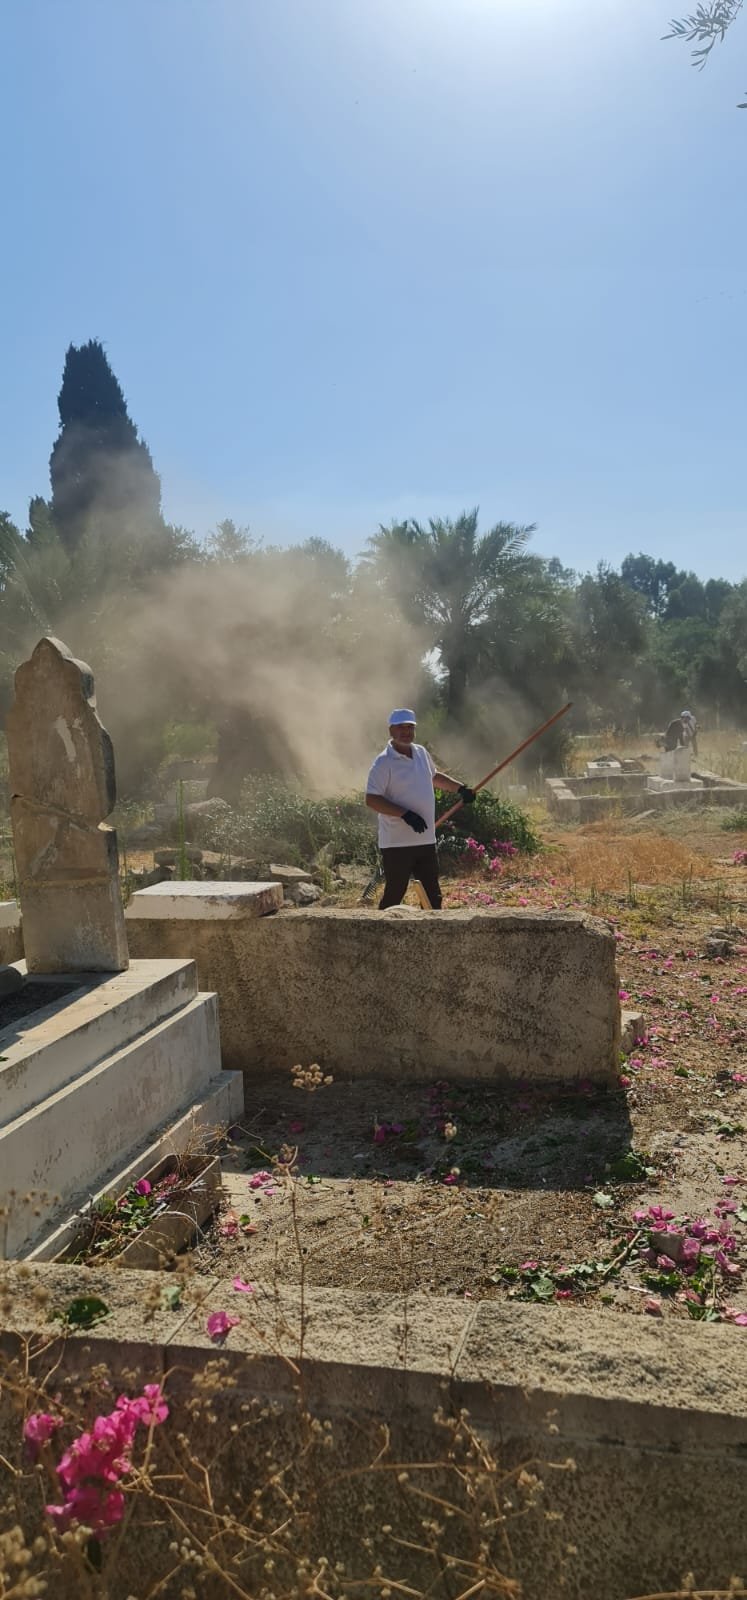 لجنة "أوقافُنا" بالتعاون مع جهات محلية تنظم يوم عمل تطوعي لتنظيف مقبرة القسام-حيفا-6